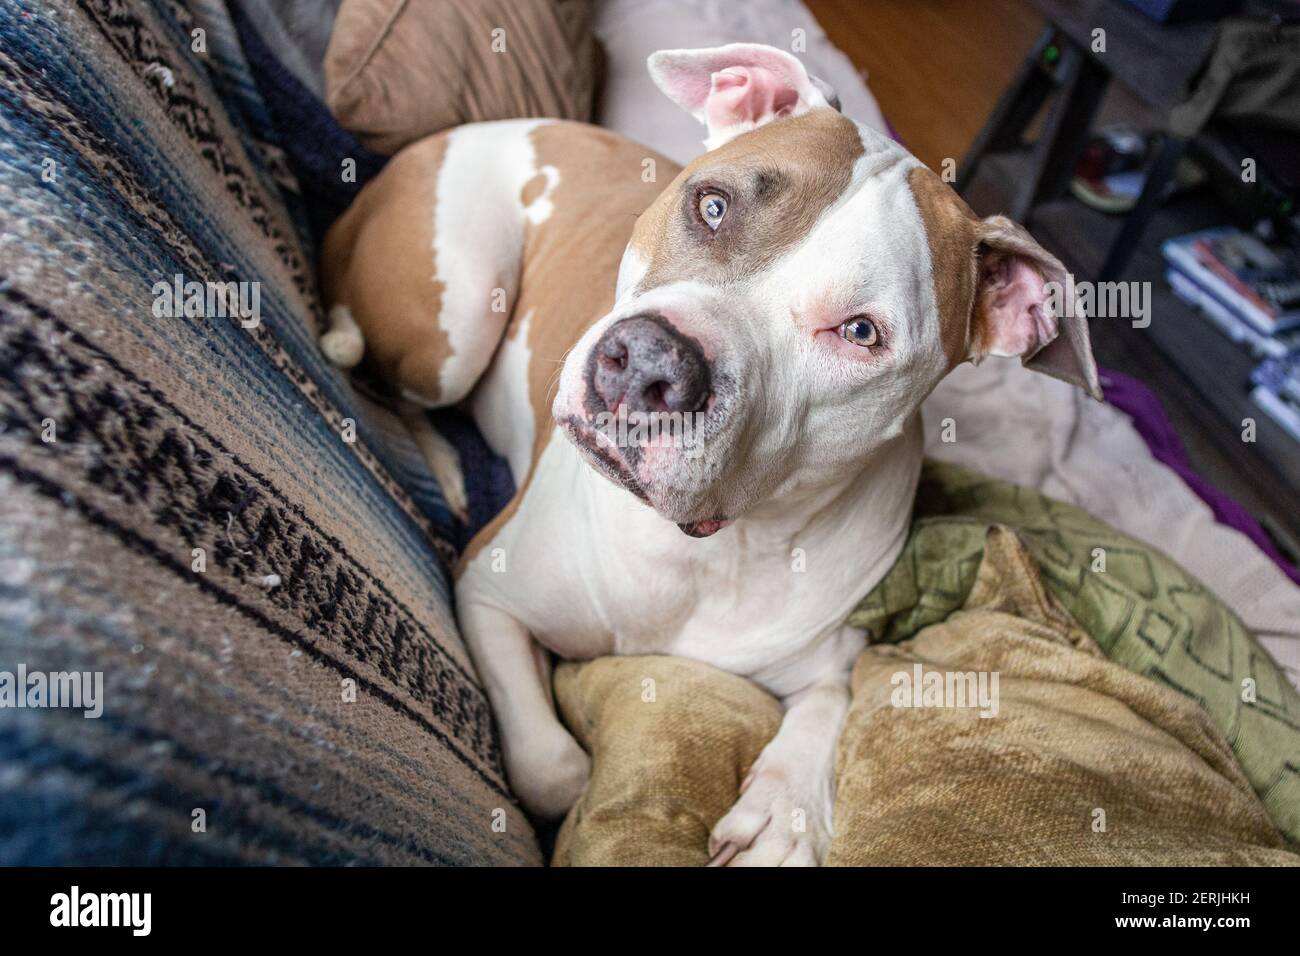 Un chien pitbull de race mixte (American Staffordshire Pit Bull Terrier et American Pit Bull Terrier) (Canis lupus familiaris) semble alerte sur un canapé. Banque D'Images